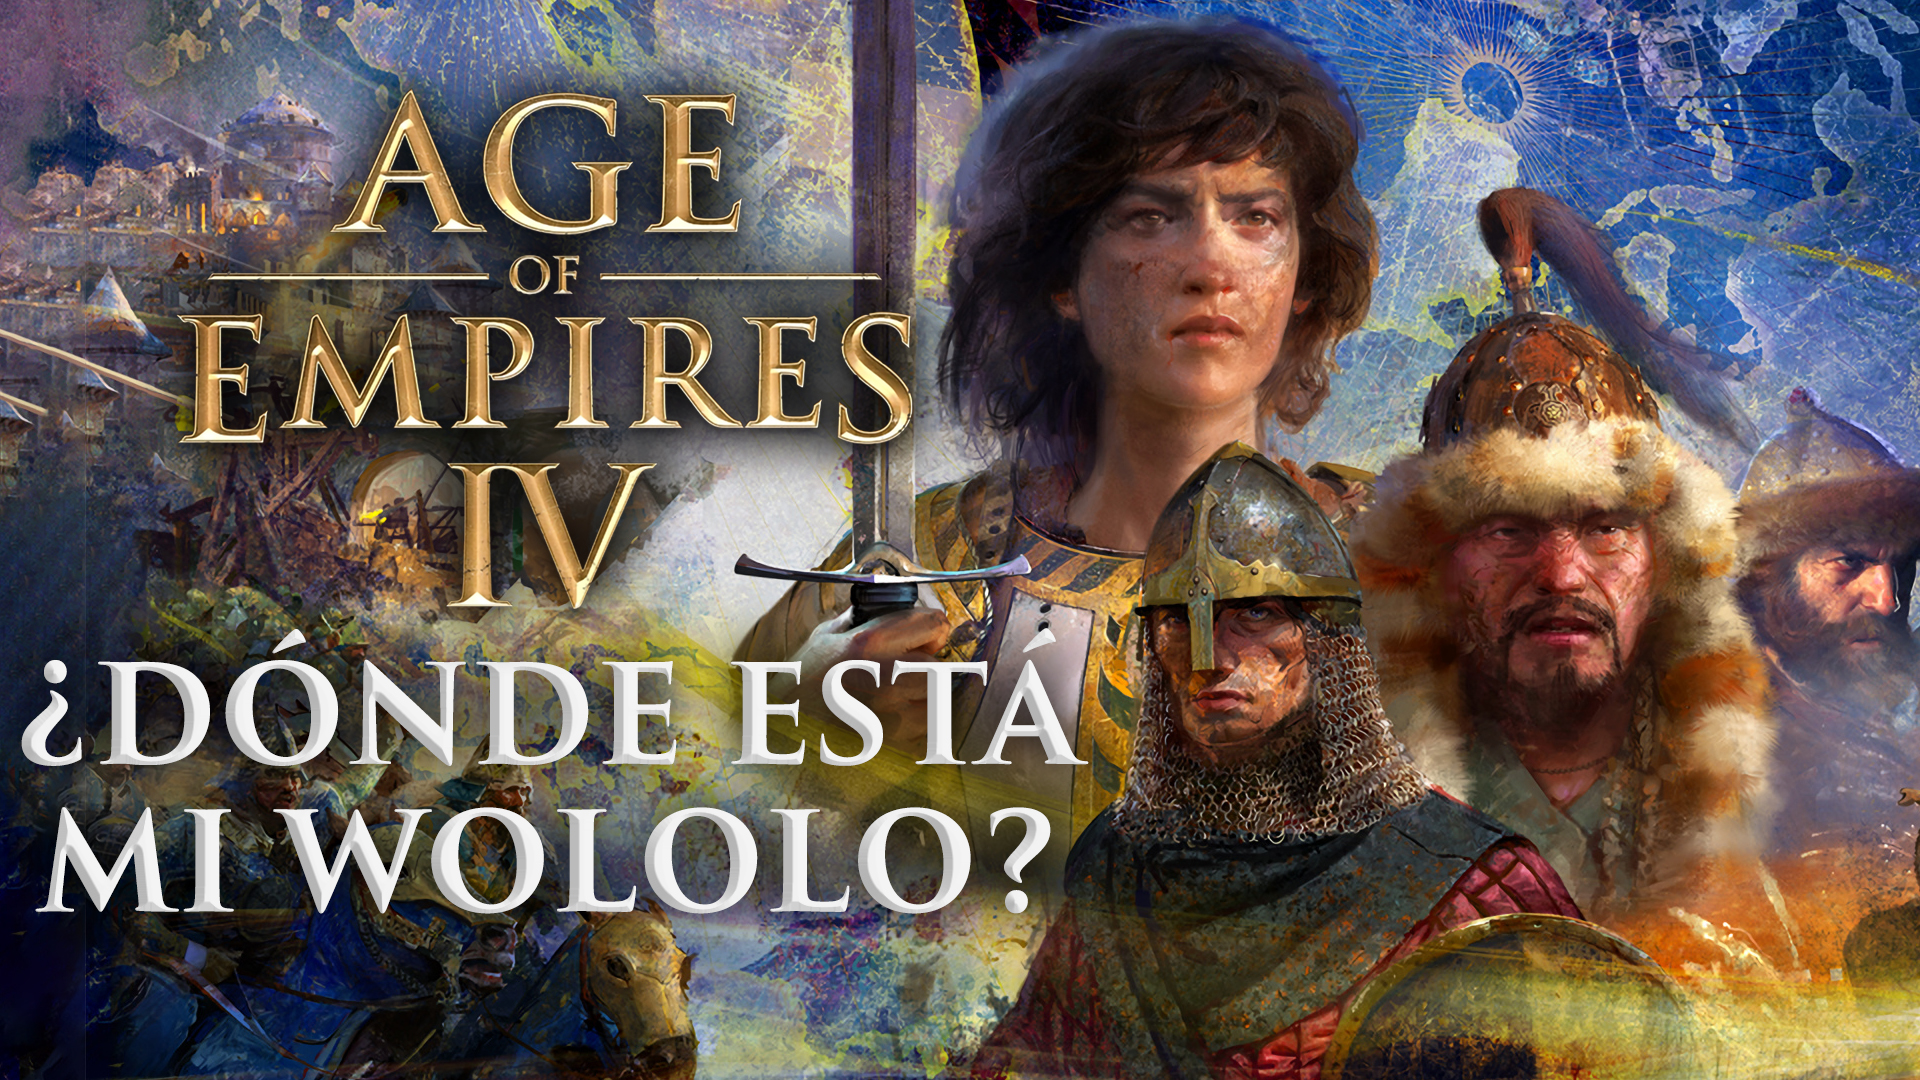 Age of Empires IV – ¿Dónde está mi wololo?